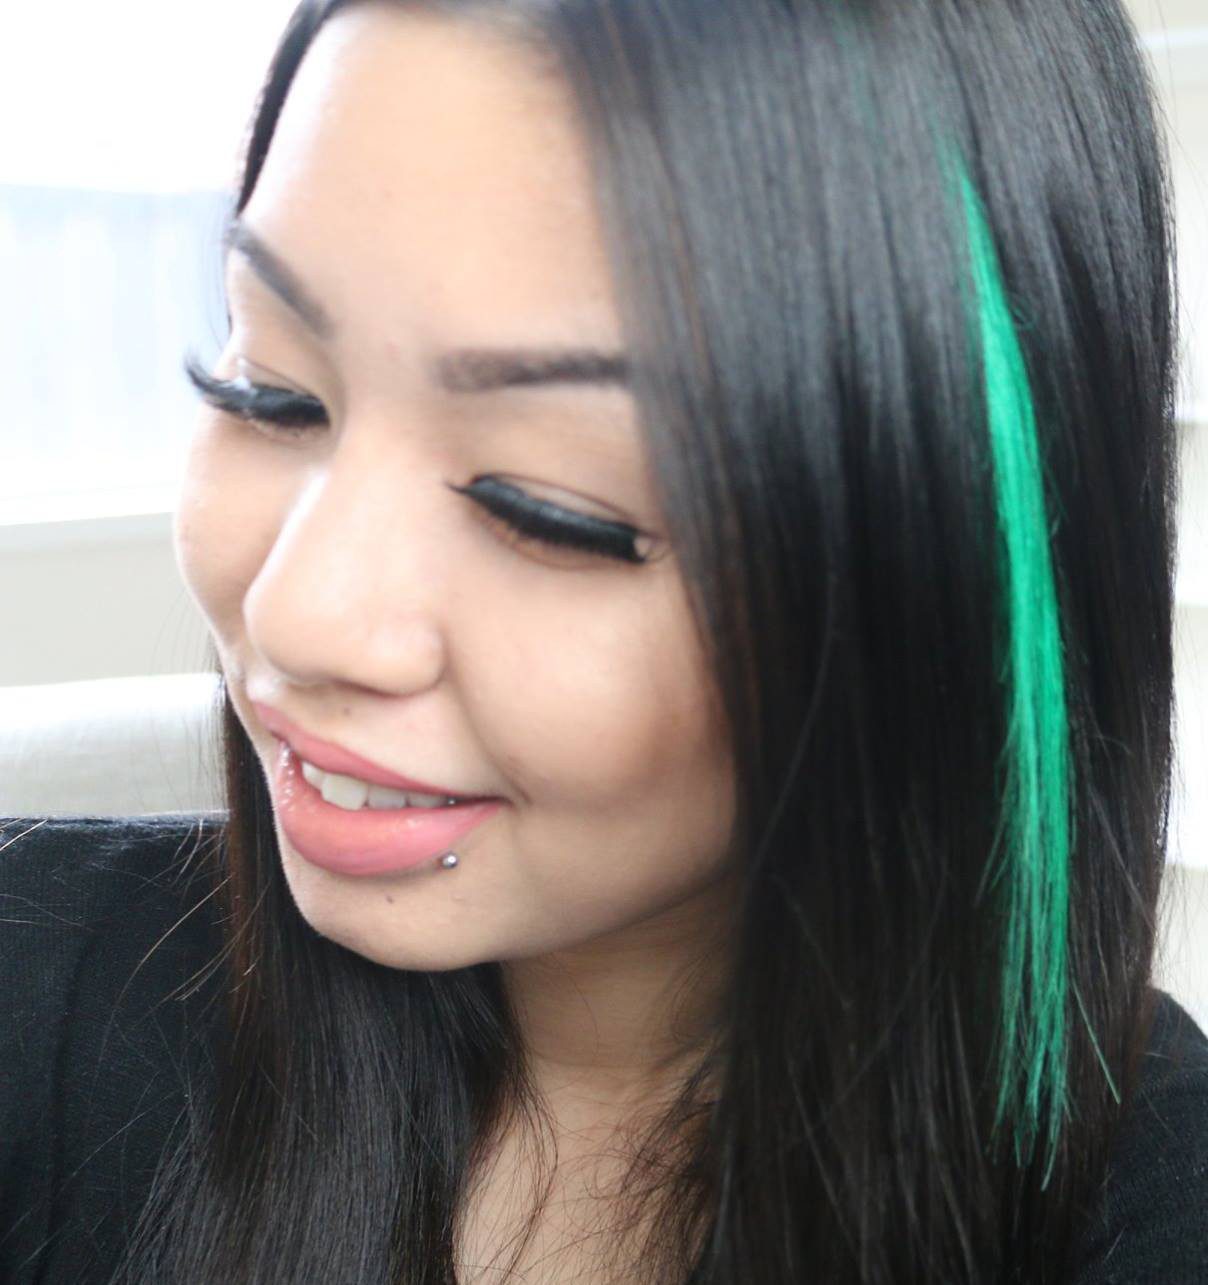 30+ Glamorous Light To Dark Green Hair Styles Trending Now